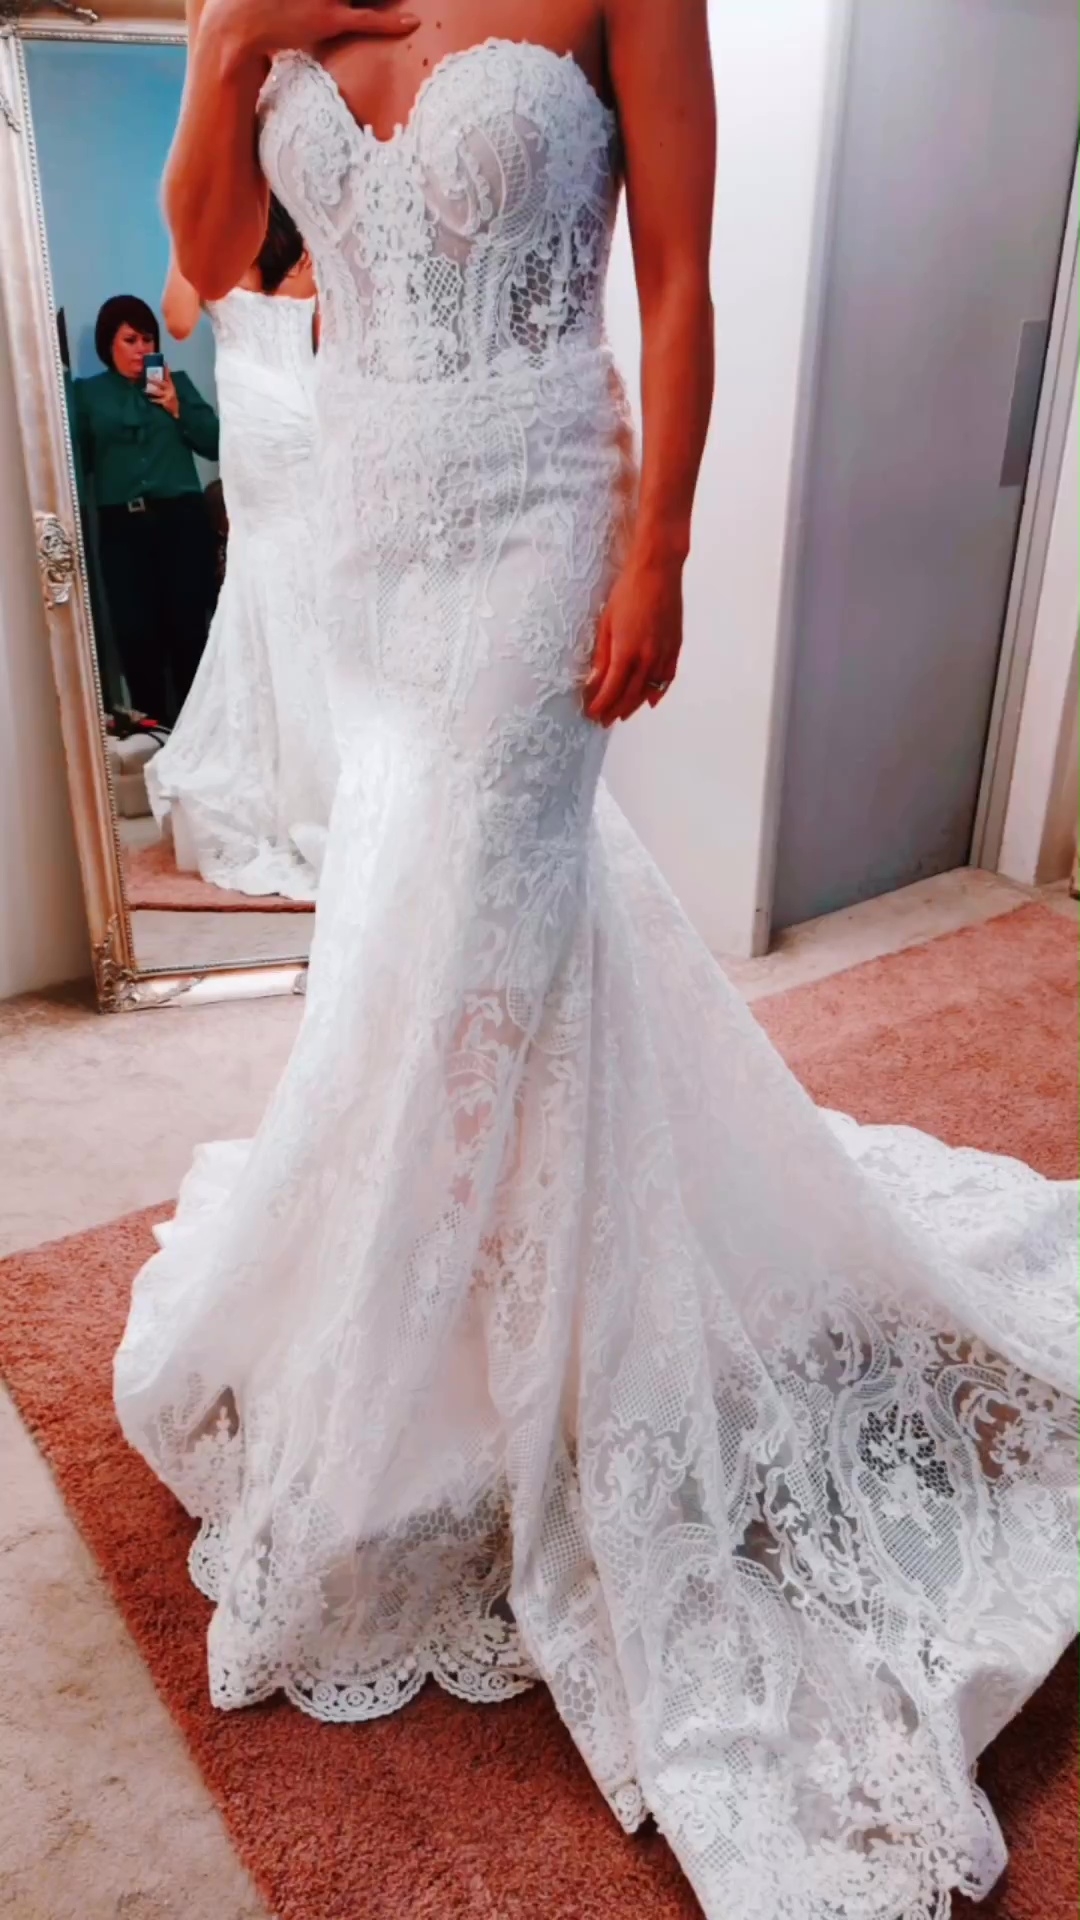 Der Star gab einen Einblick in ihr zweites Hochzeitskleid